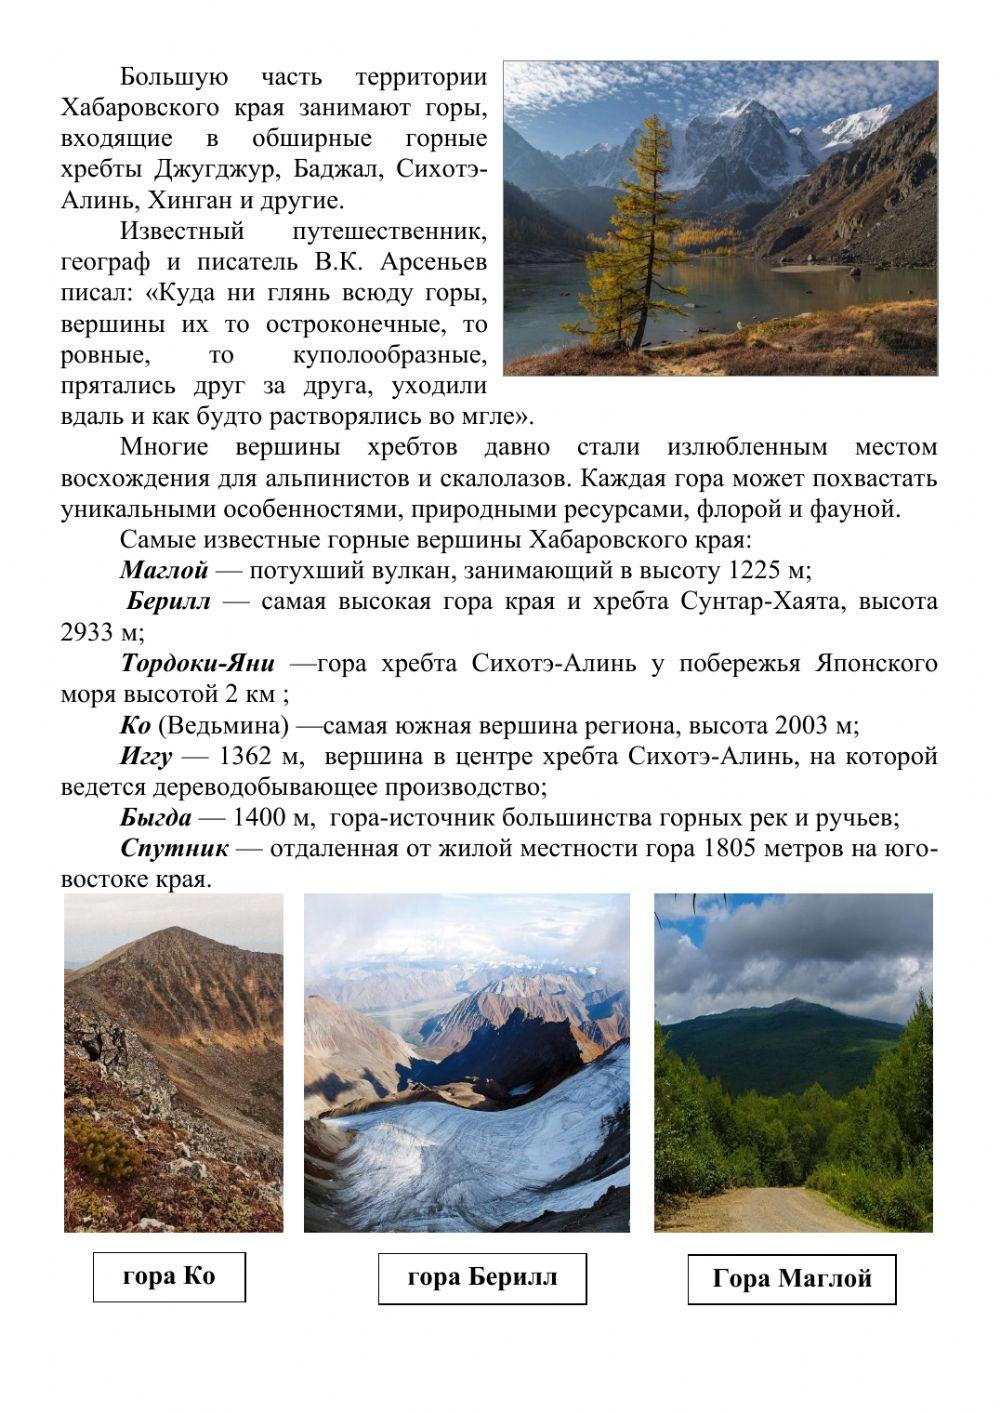 Горы Хабаровского края